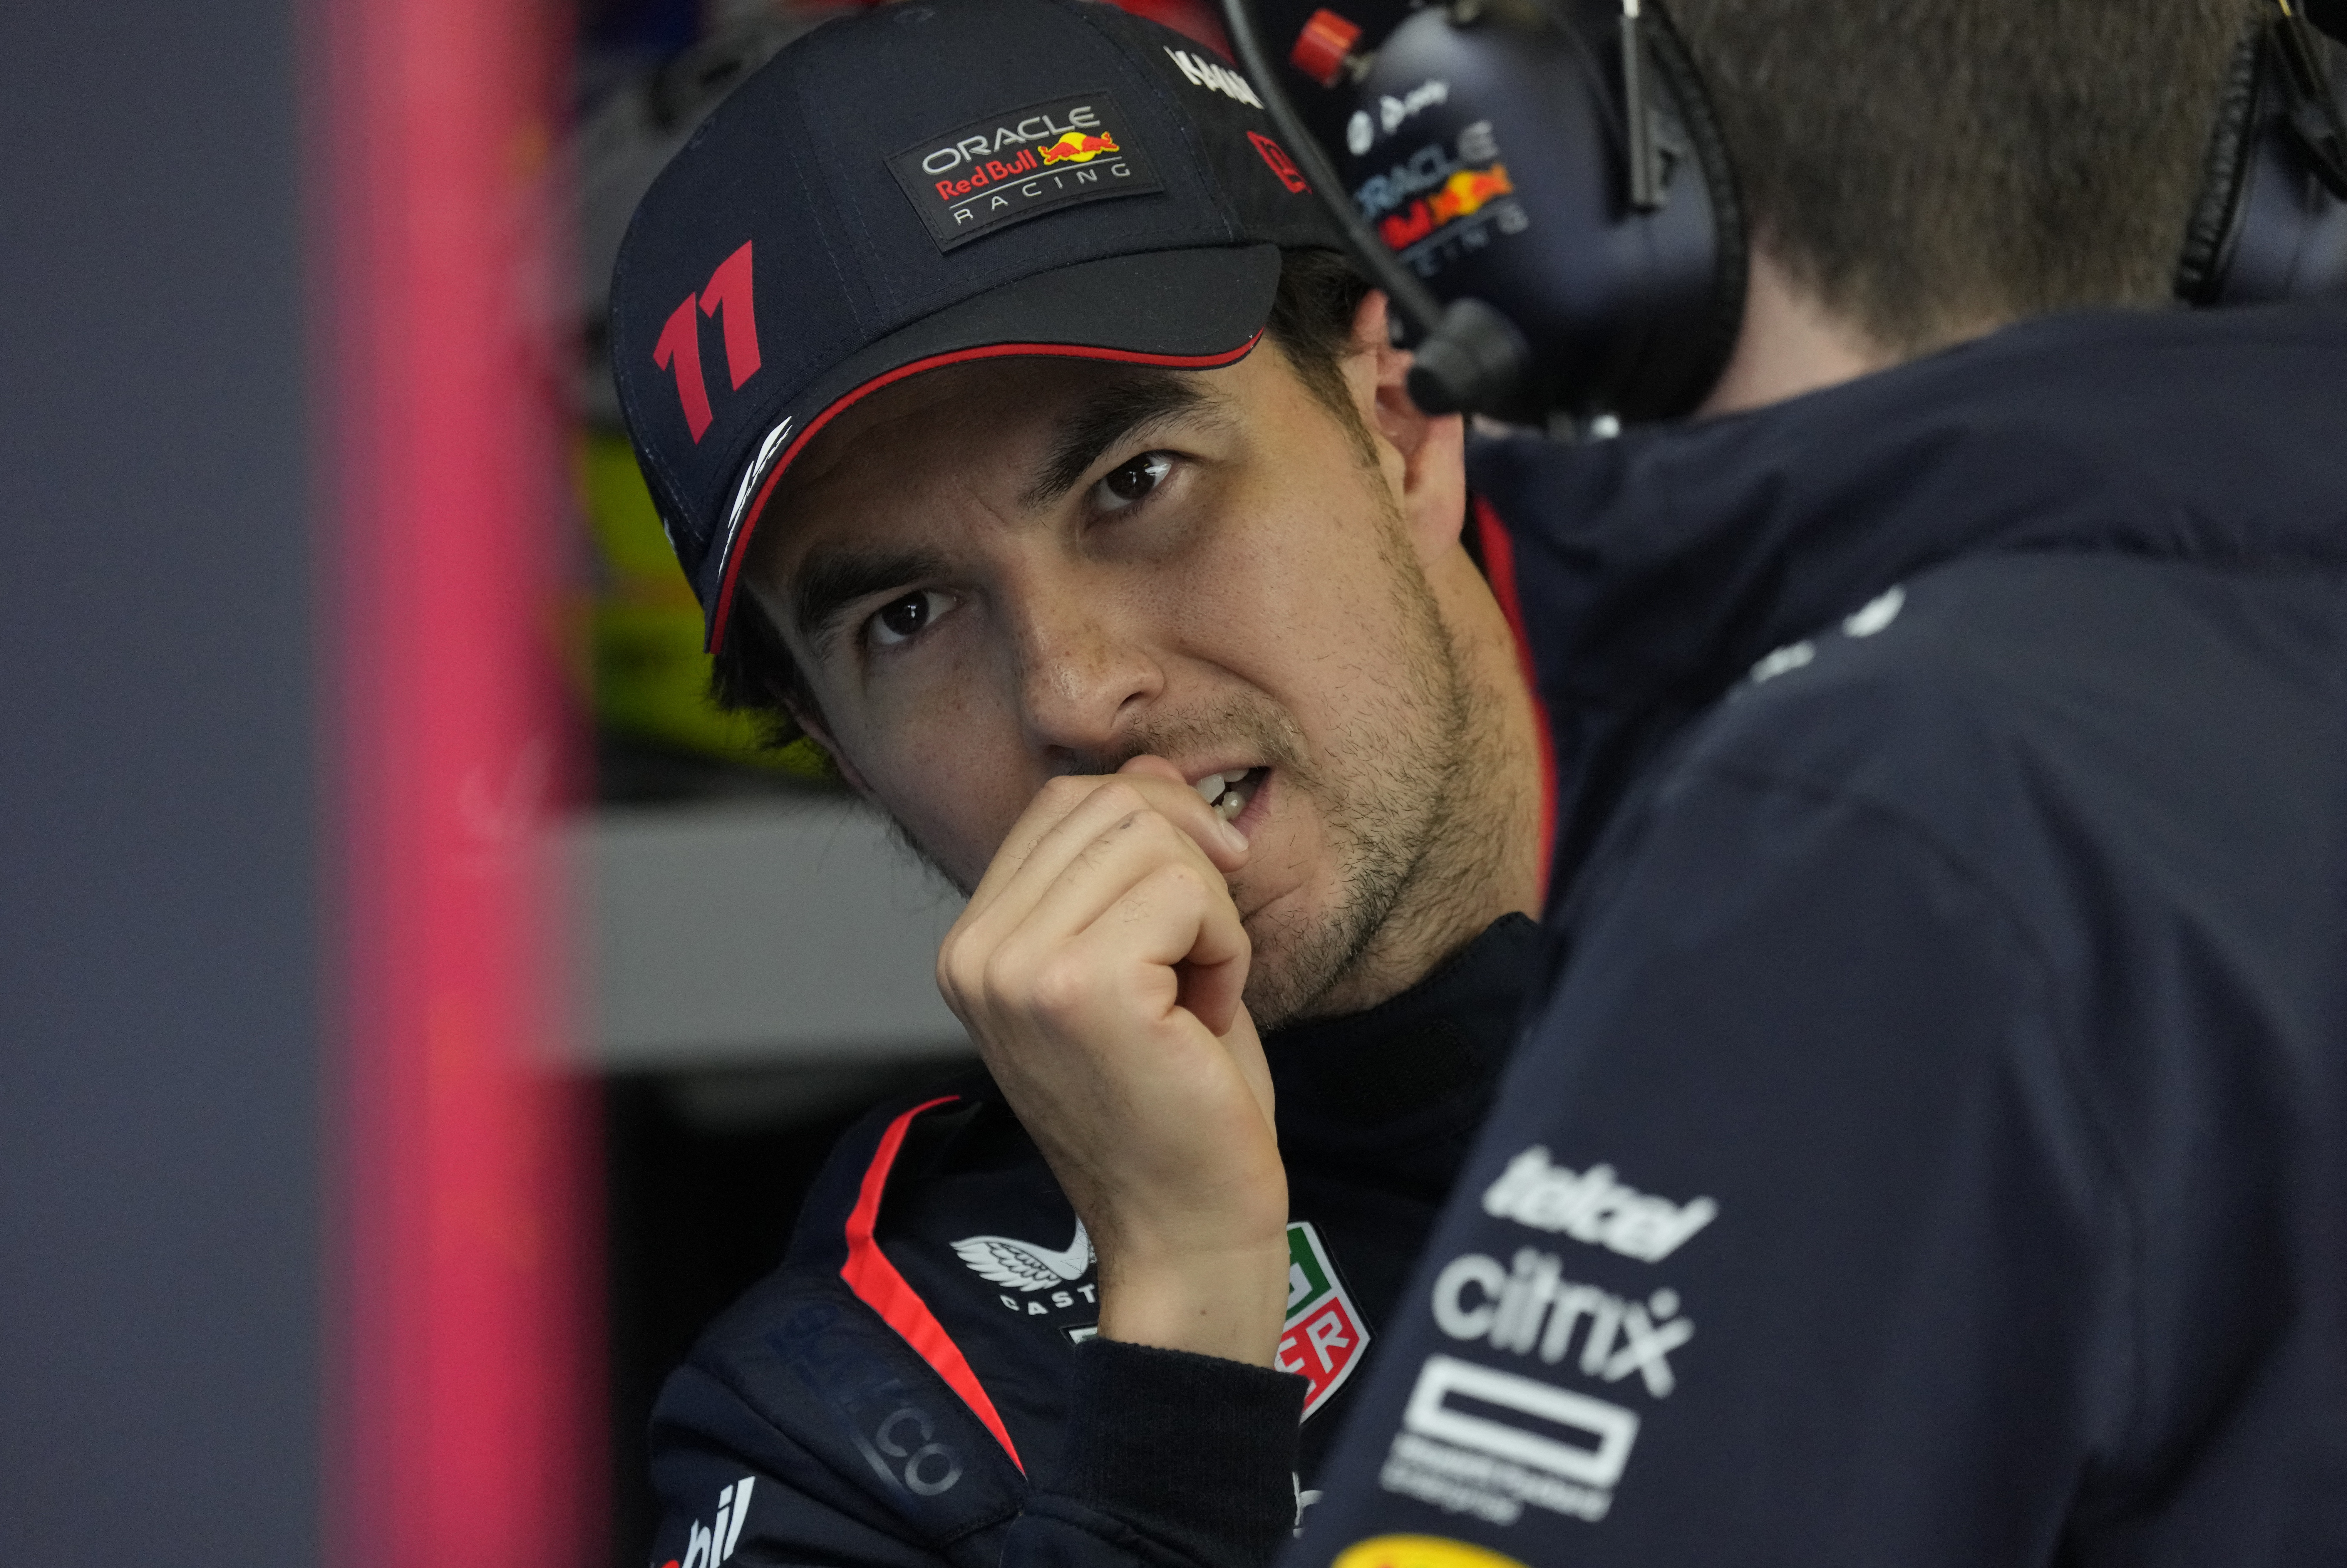 Batalla entre Checo Pérez y Verstappen podría causar crisis en Red Bull, aseguró leyenda de la F1